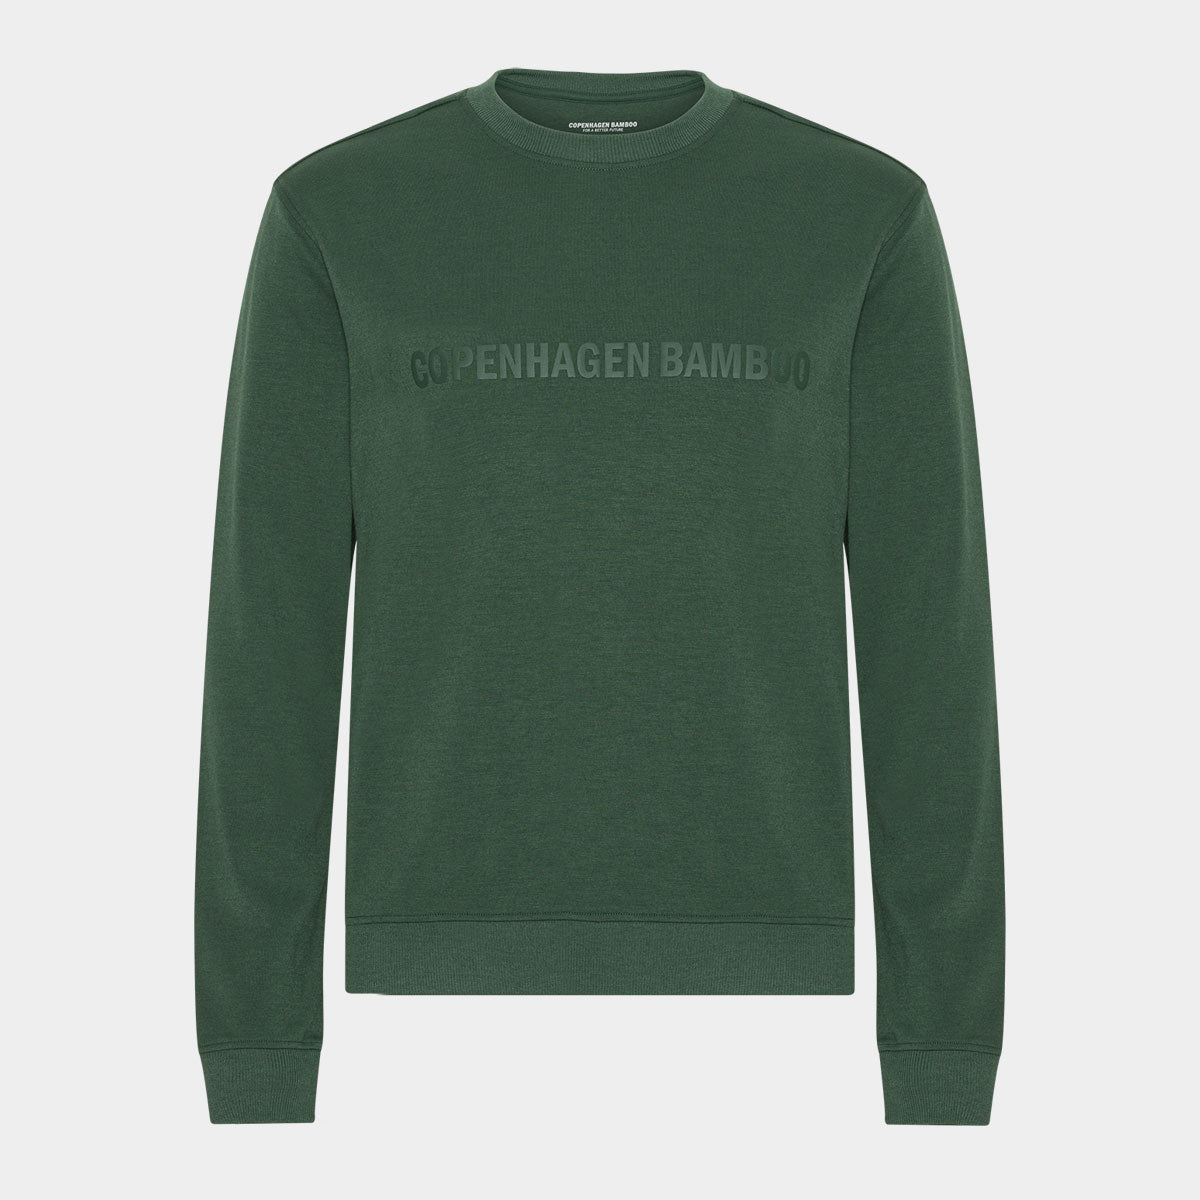 Billede af Grøn bambus sweatshirt med logo, S hos Bambustøj.dk